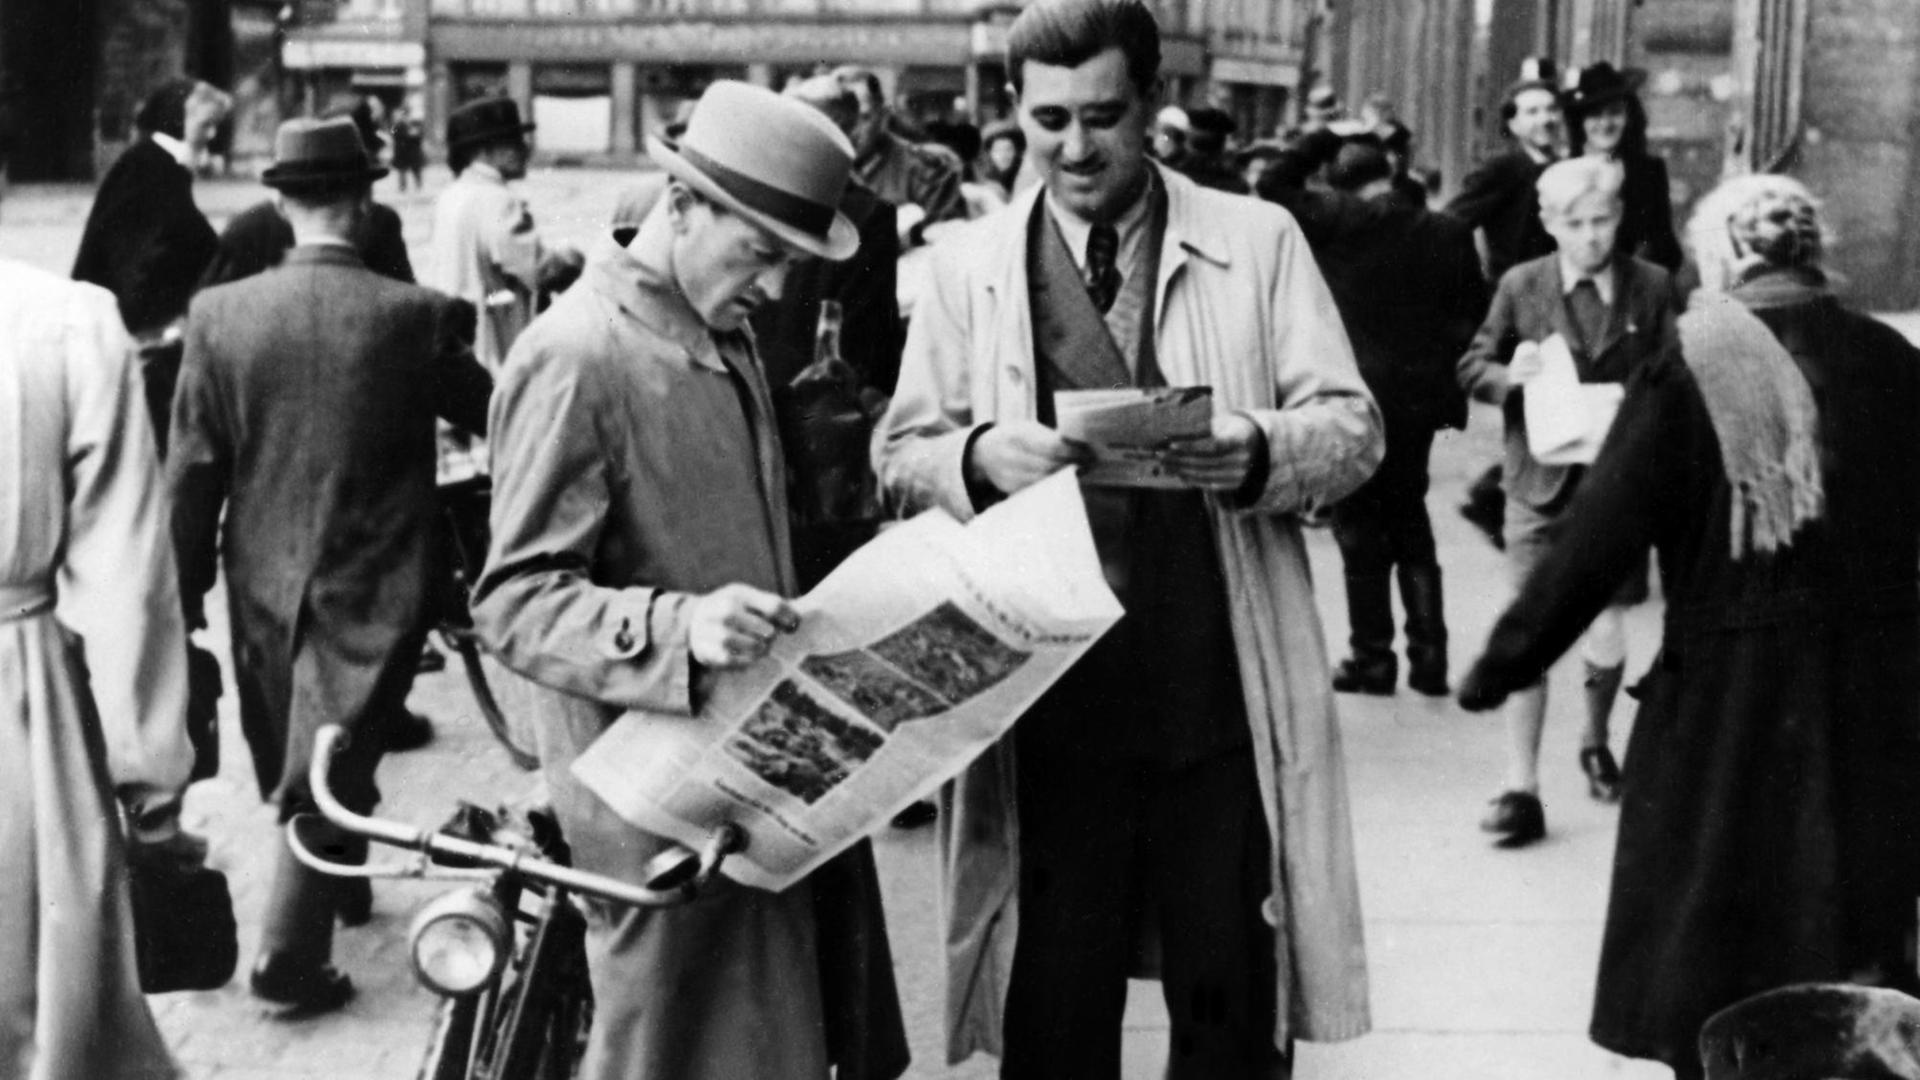 Das schwarz-weiß Foto zeigt zwei Männer, die die "Aachener Nachrichten" lesen, die als erste deutsche Zeitung nach dem Zweiten Weltkrieg erschien